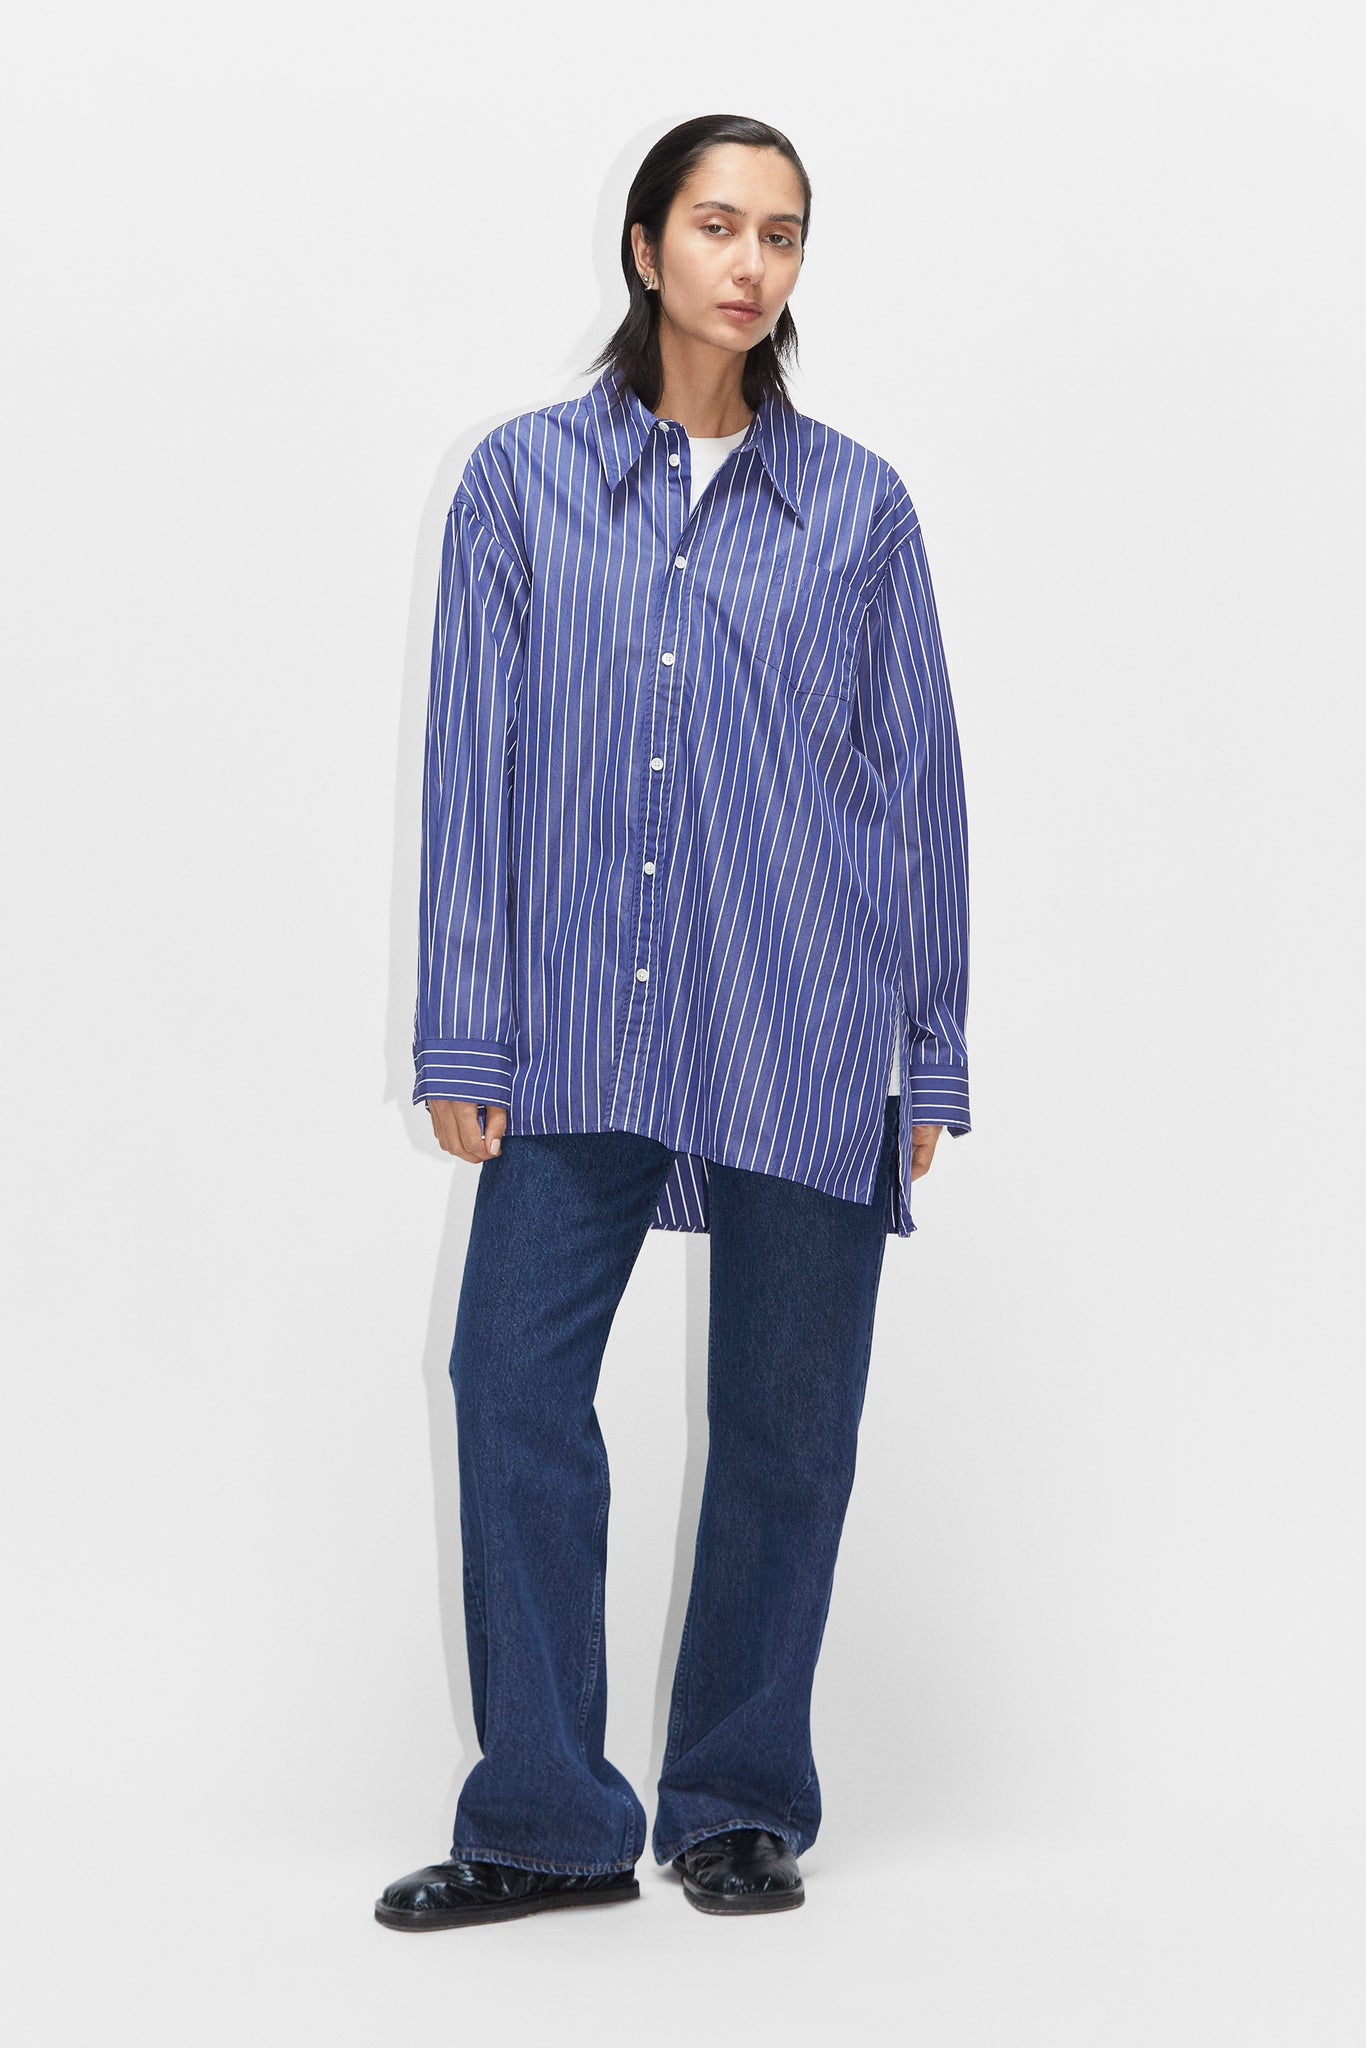 HOPE – STHLM Dark Shirt Asymmetrical Oversized Blue Stripe in